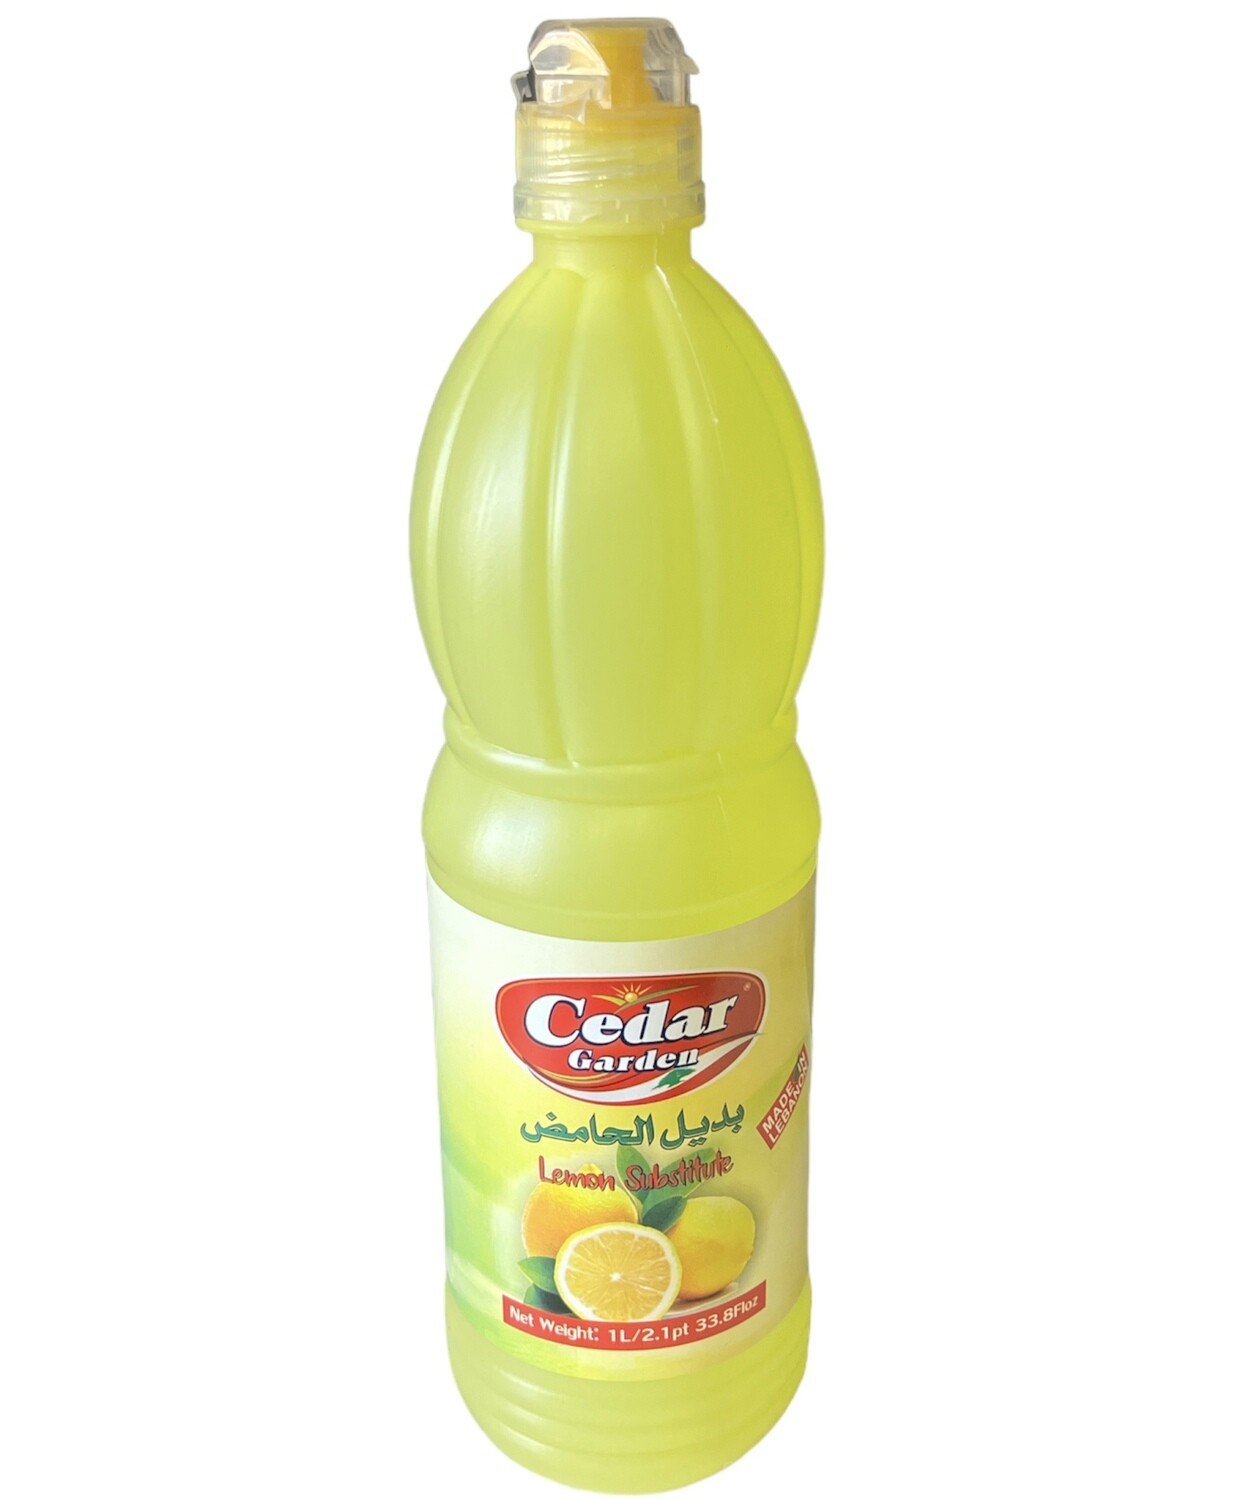 Cedar Garden Lemon Juice 12x1L